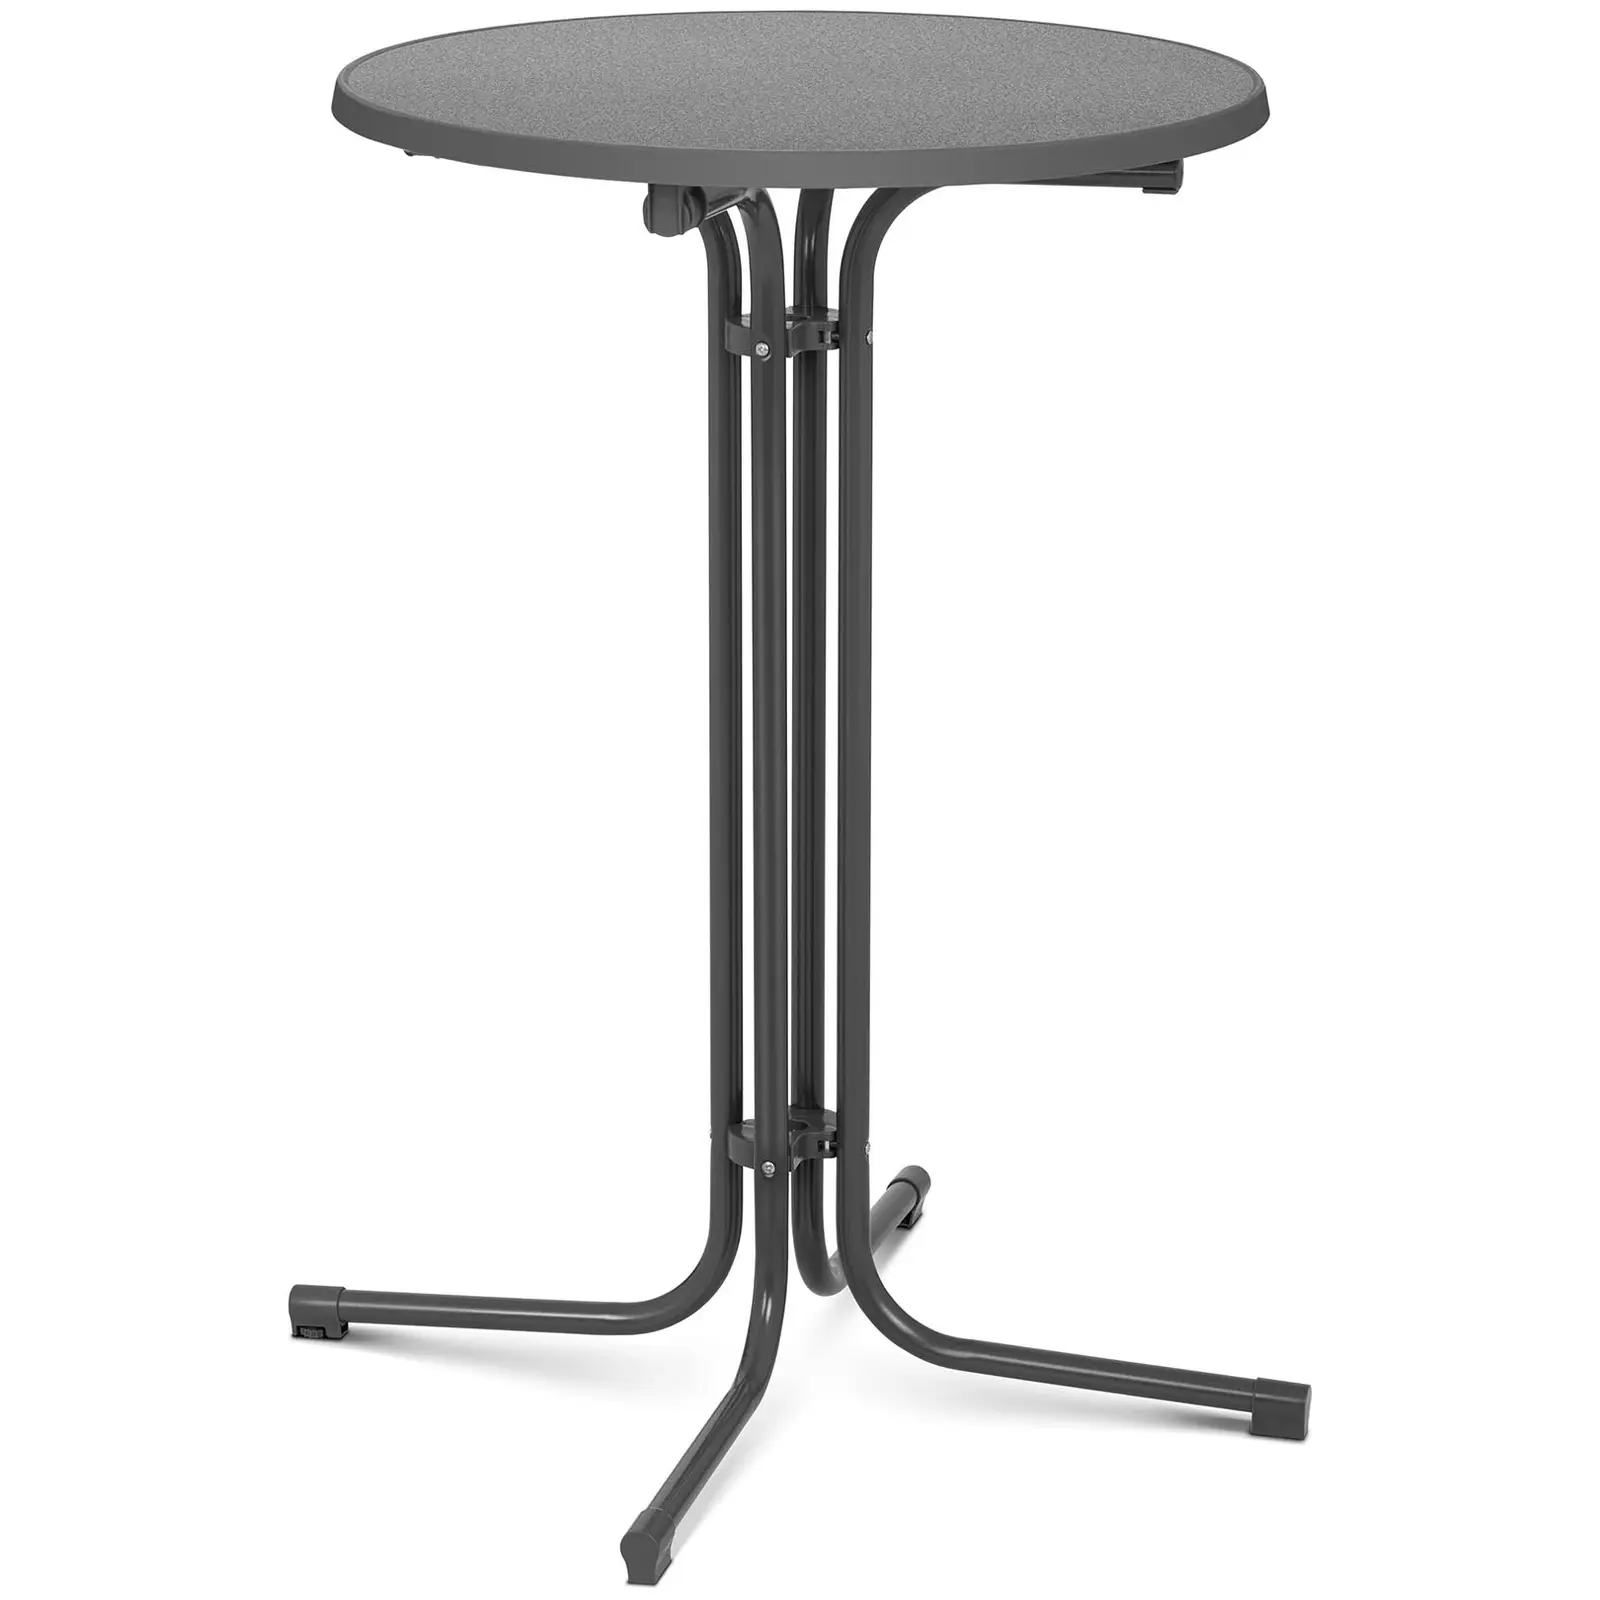 Visoka barska miza - Ø 70 cm - zložljiva - siva